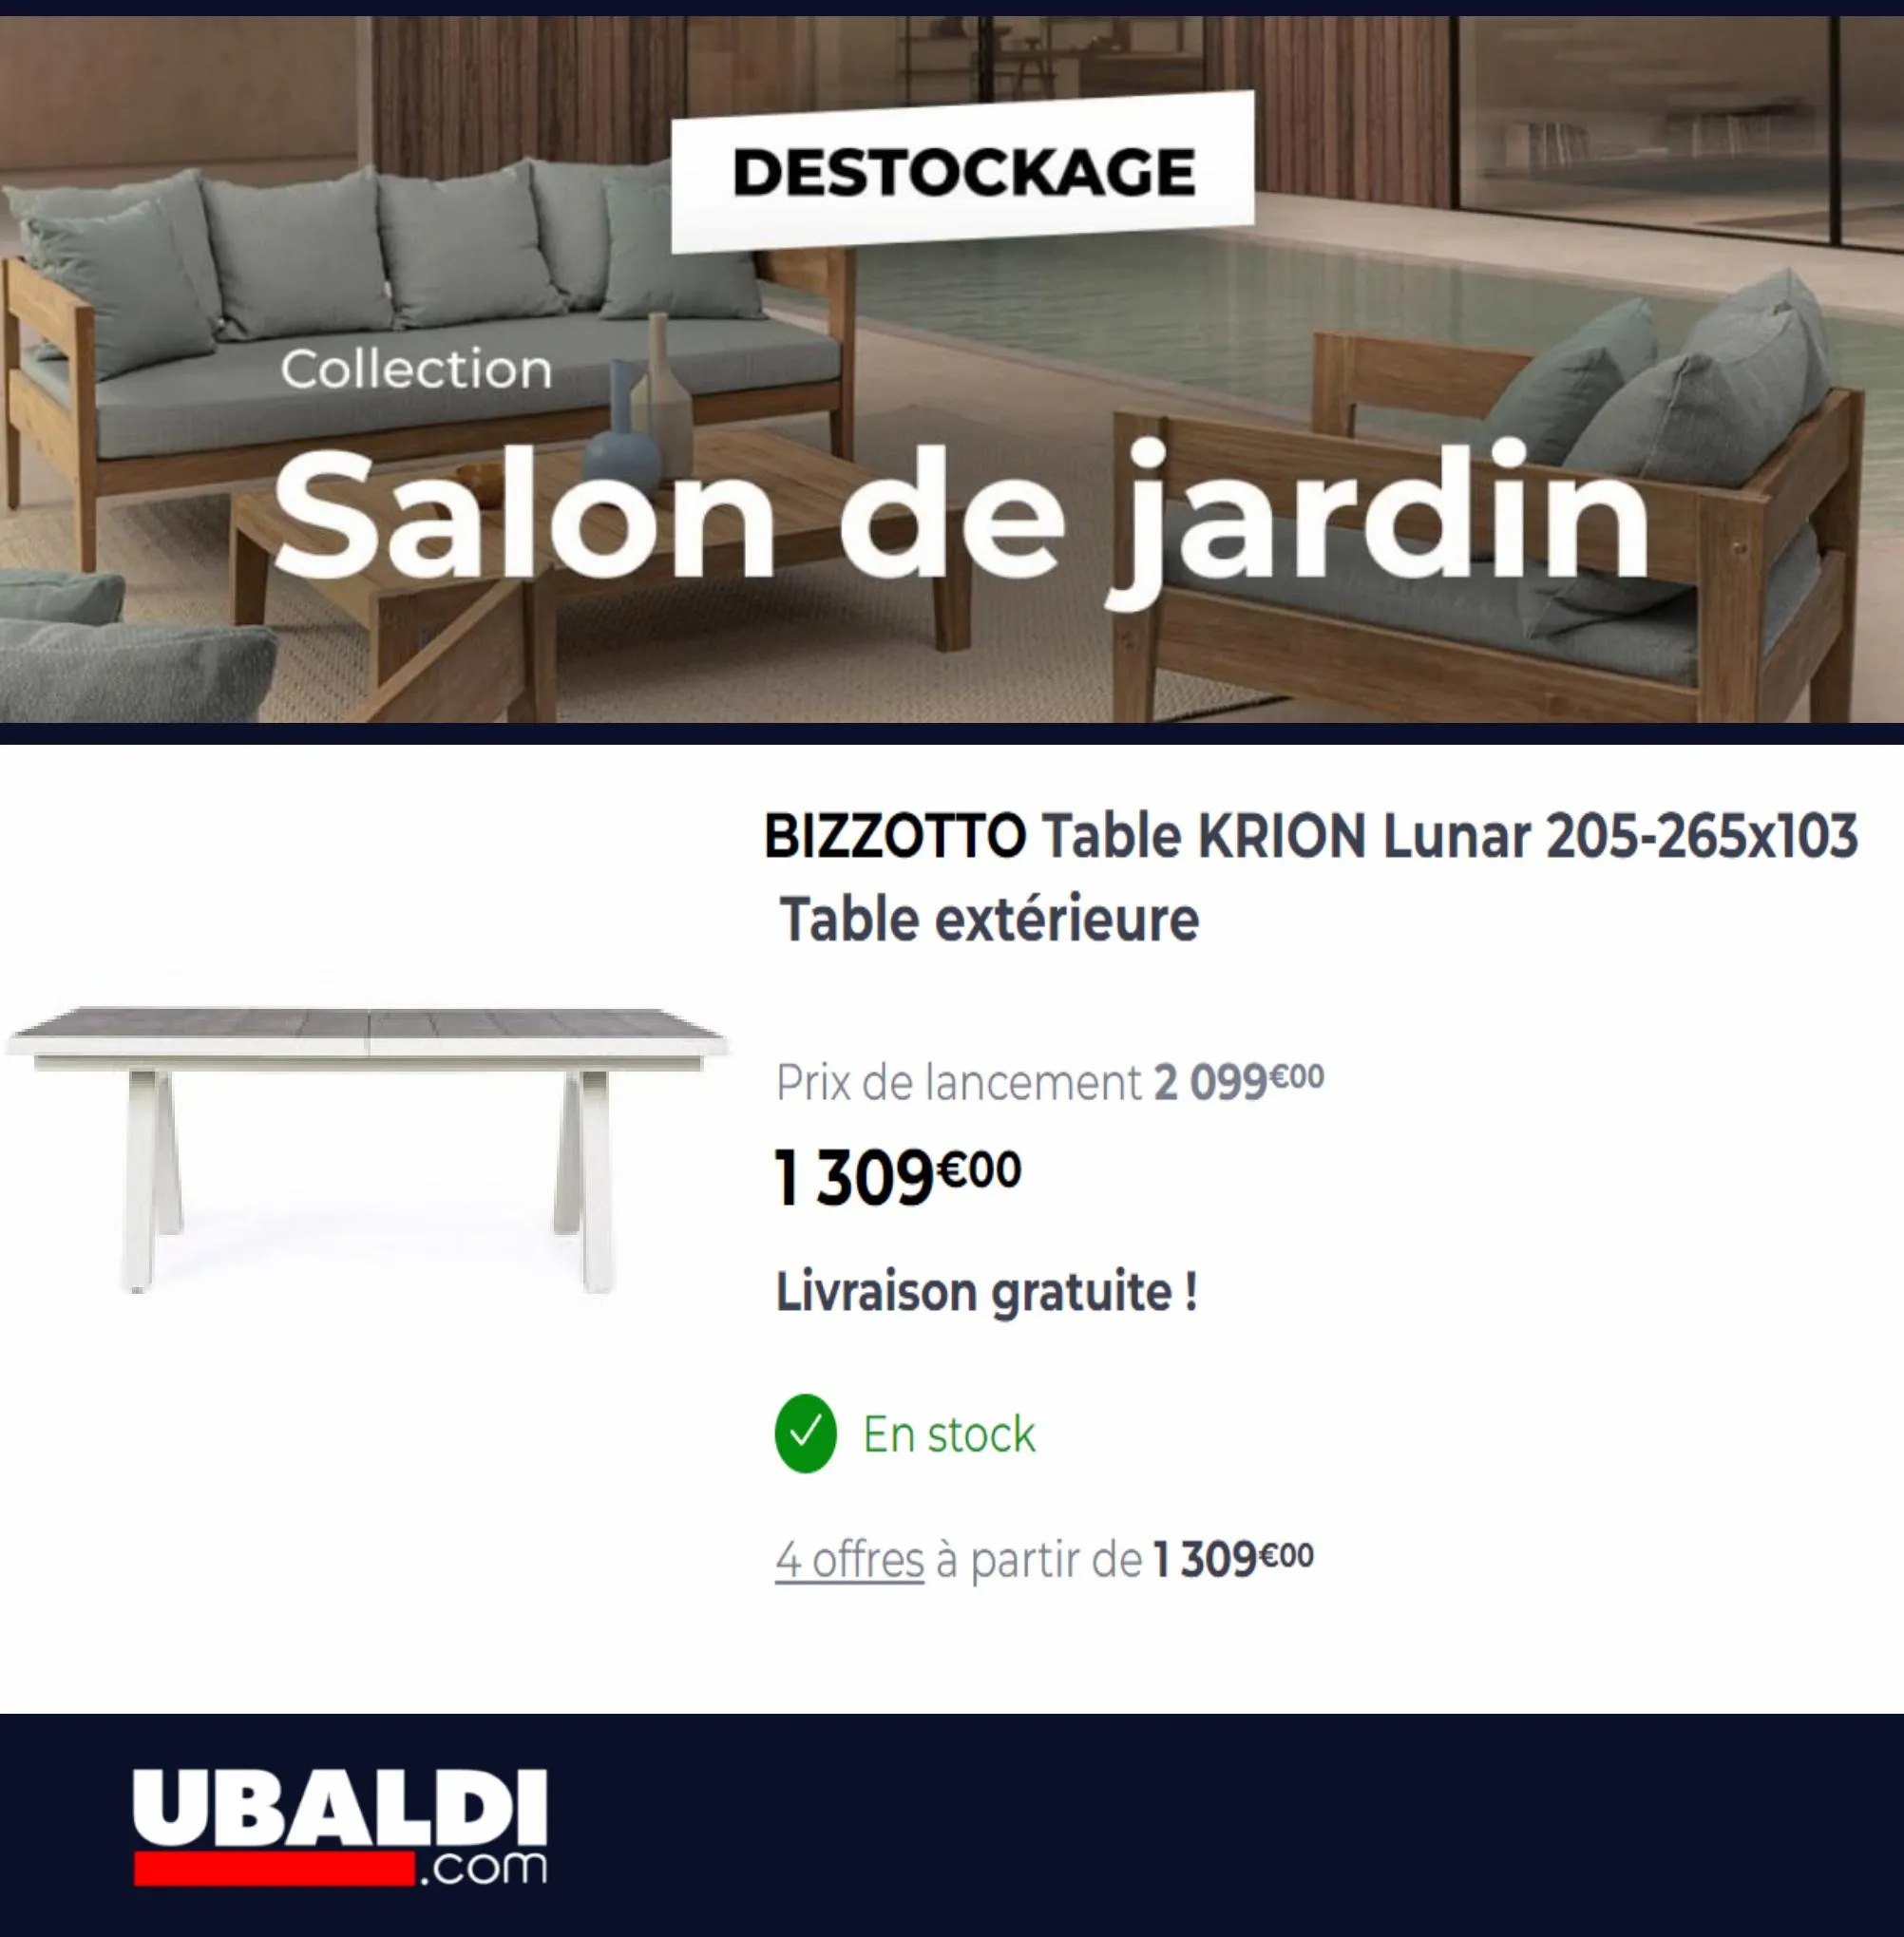 Catalogue Destockage Salon de Jardin, page 00005